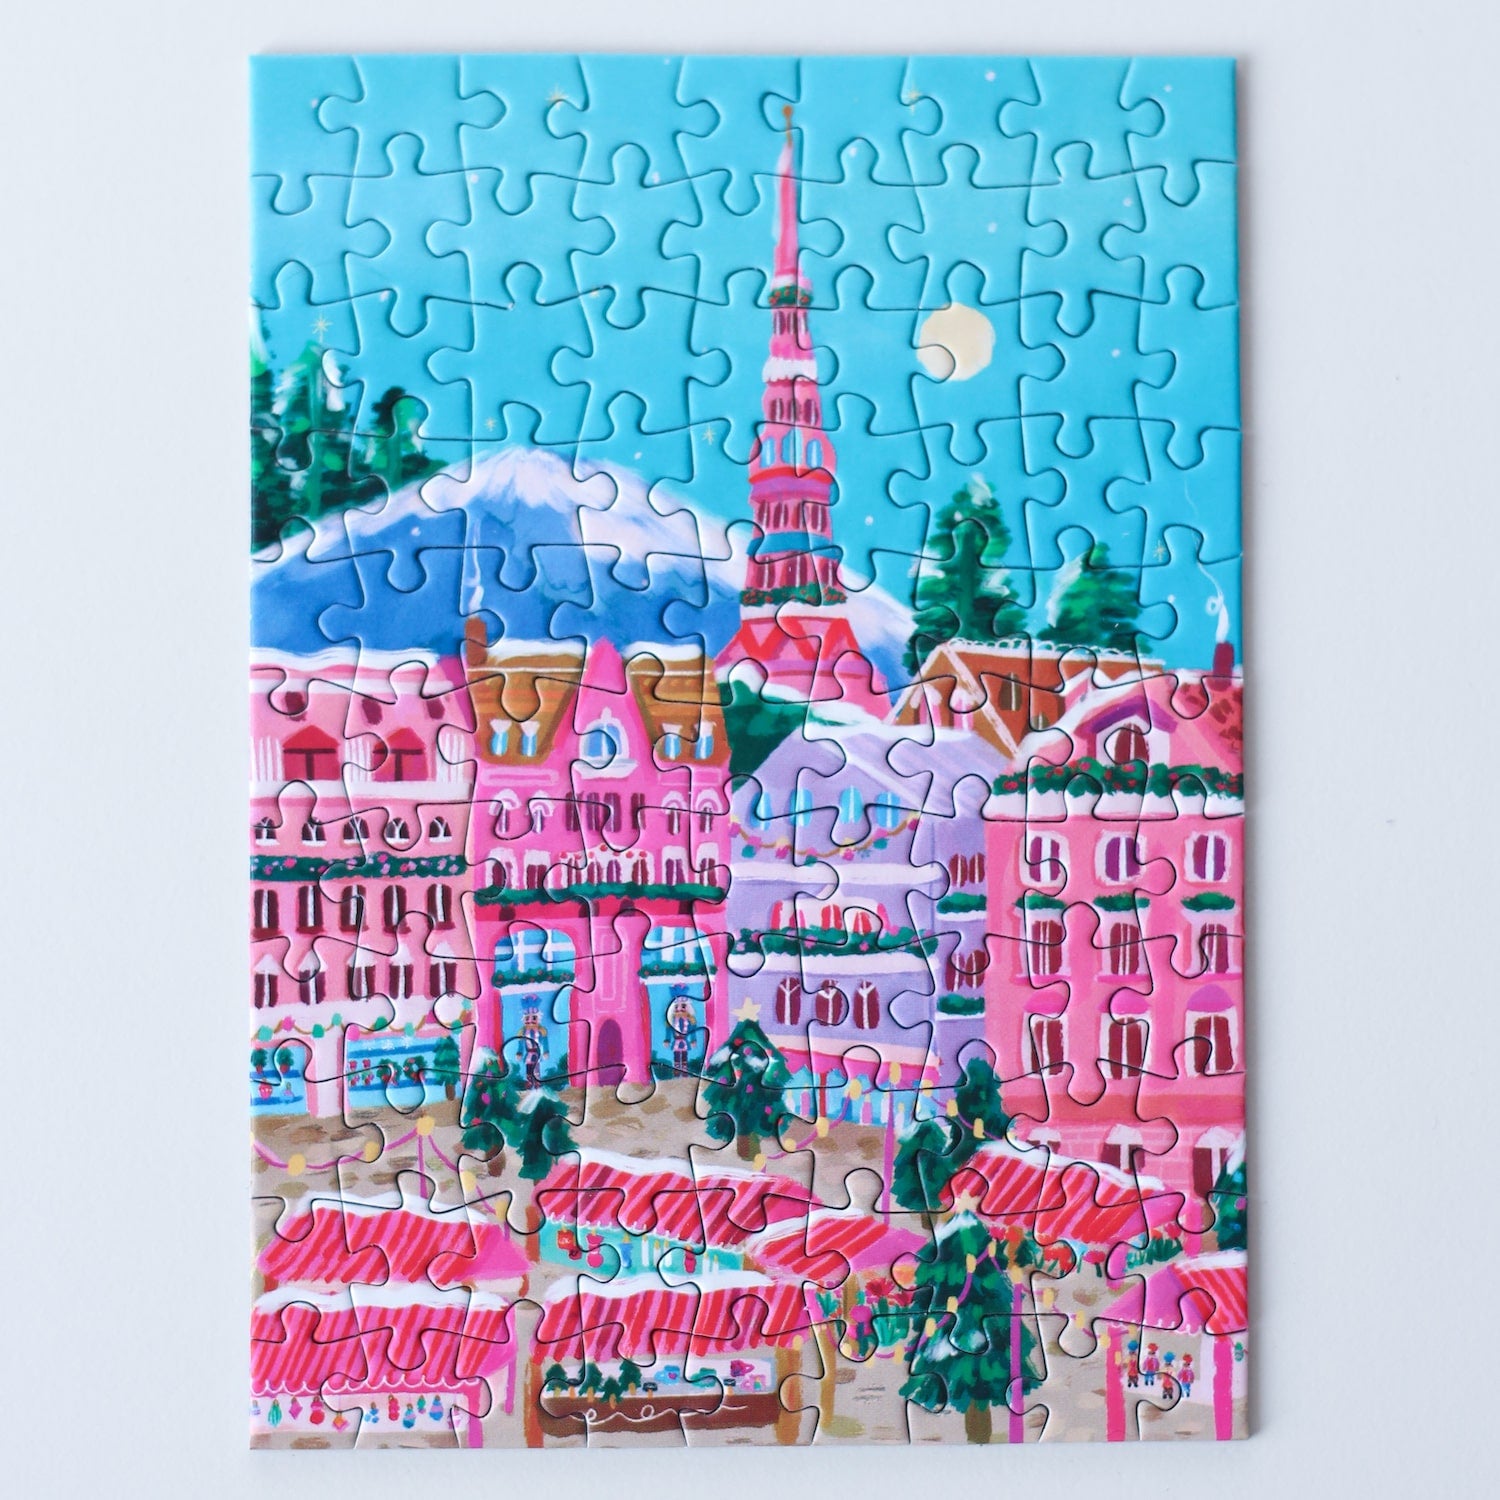 99-teiliges Minipuzzle für Erwachsene, das den Weihnachtsmarkt in Riga zeigt. Auf dem Platz befinden sich pinke Stände und geschmückte Weihnachtsbäume.